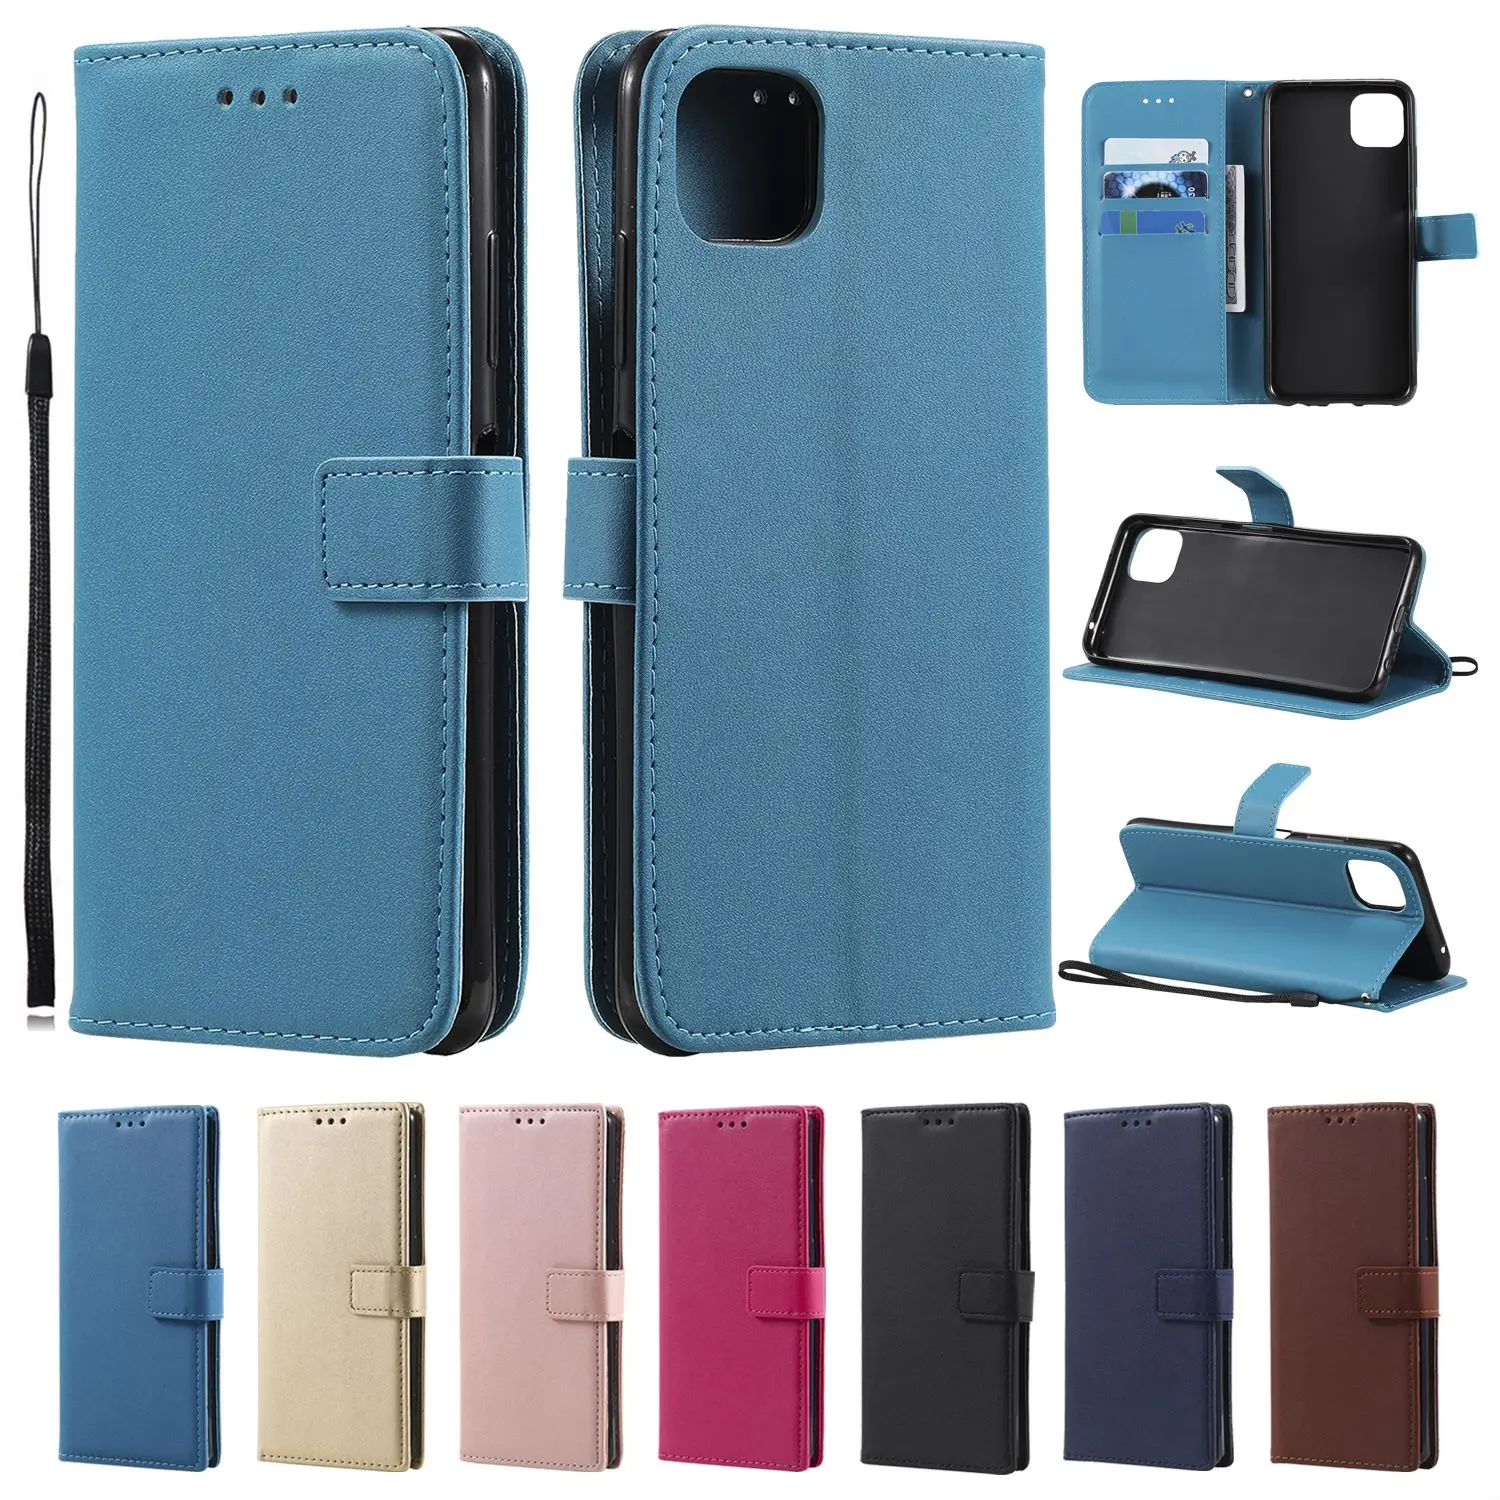 

Wallet Holster Phone Case For Huawei P7 P8 P9 P10 P20 P30 P40 Lite Mini P30 P40 Pro P Smart Nova 2i 3i 5i Leather Phone Cases